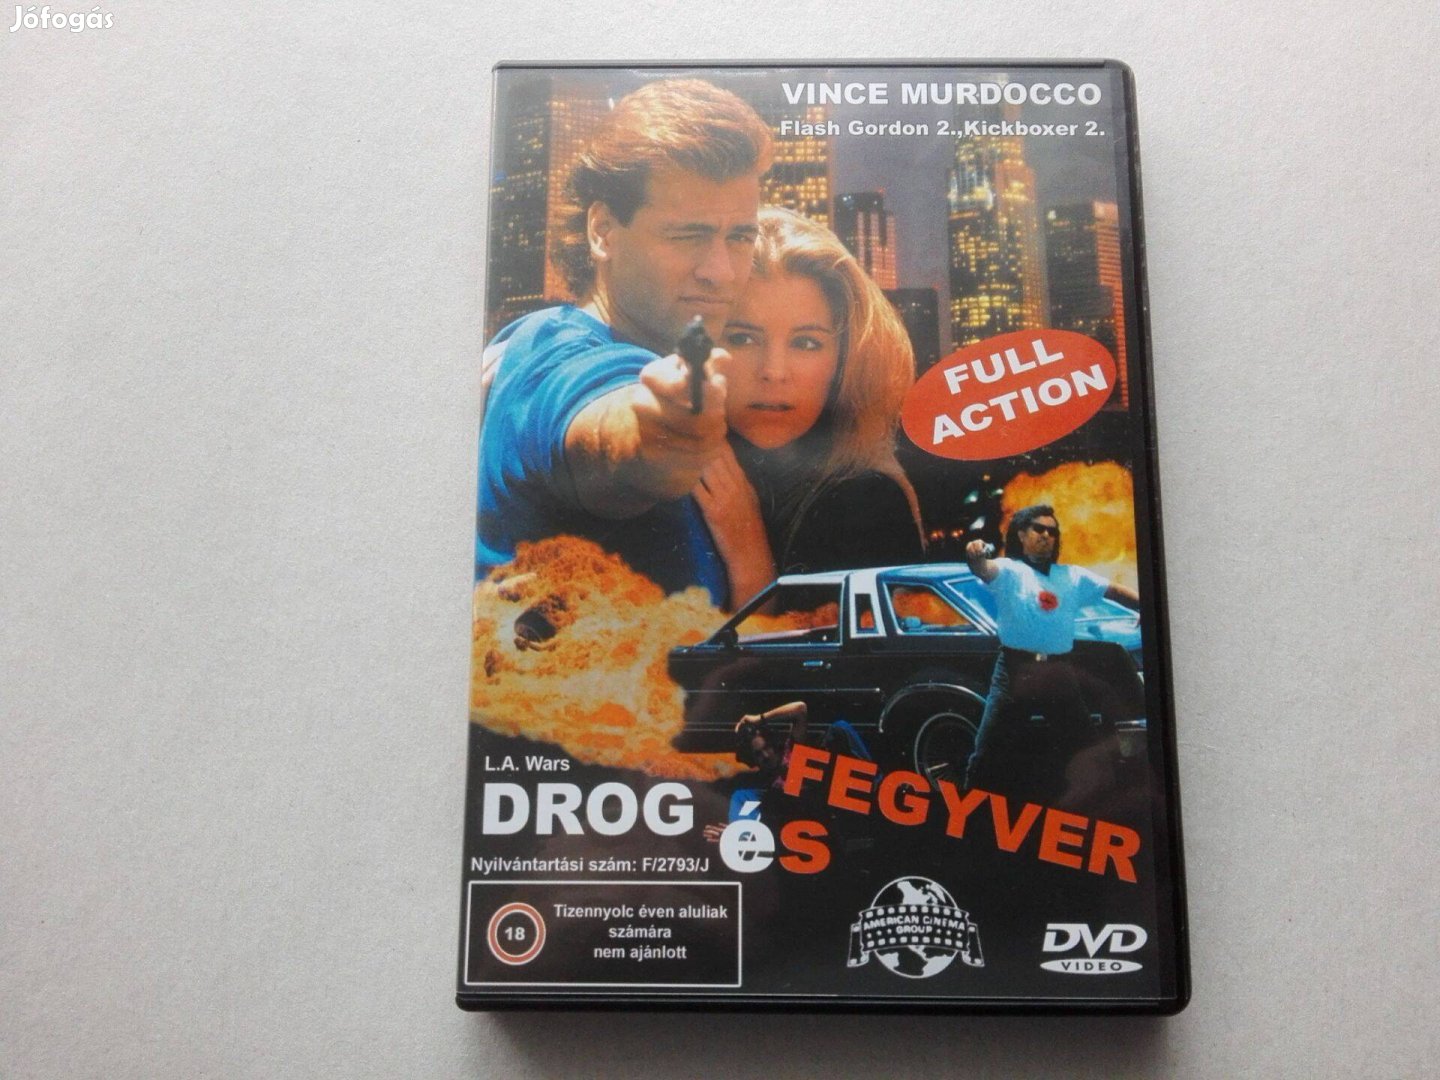 Drog és fegyver című új, eredeti DVD film (magyar)eladó !